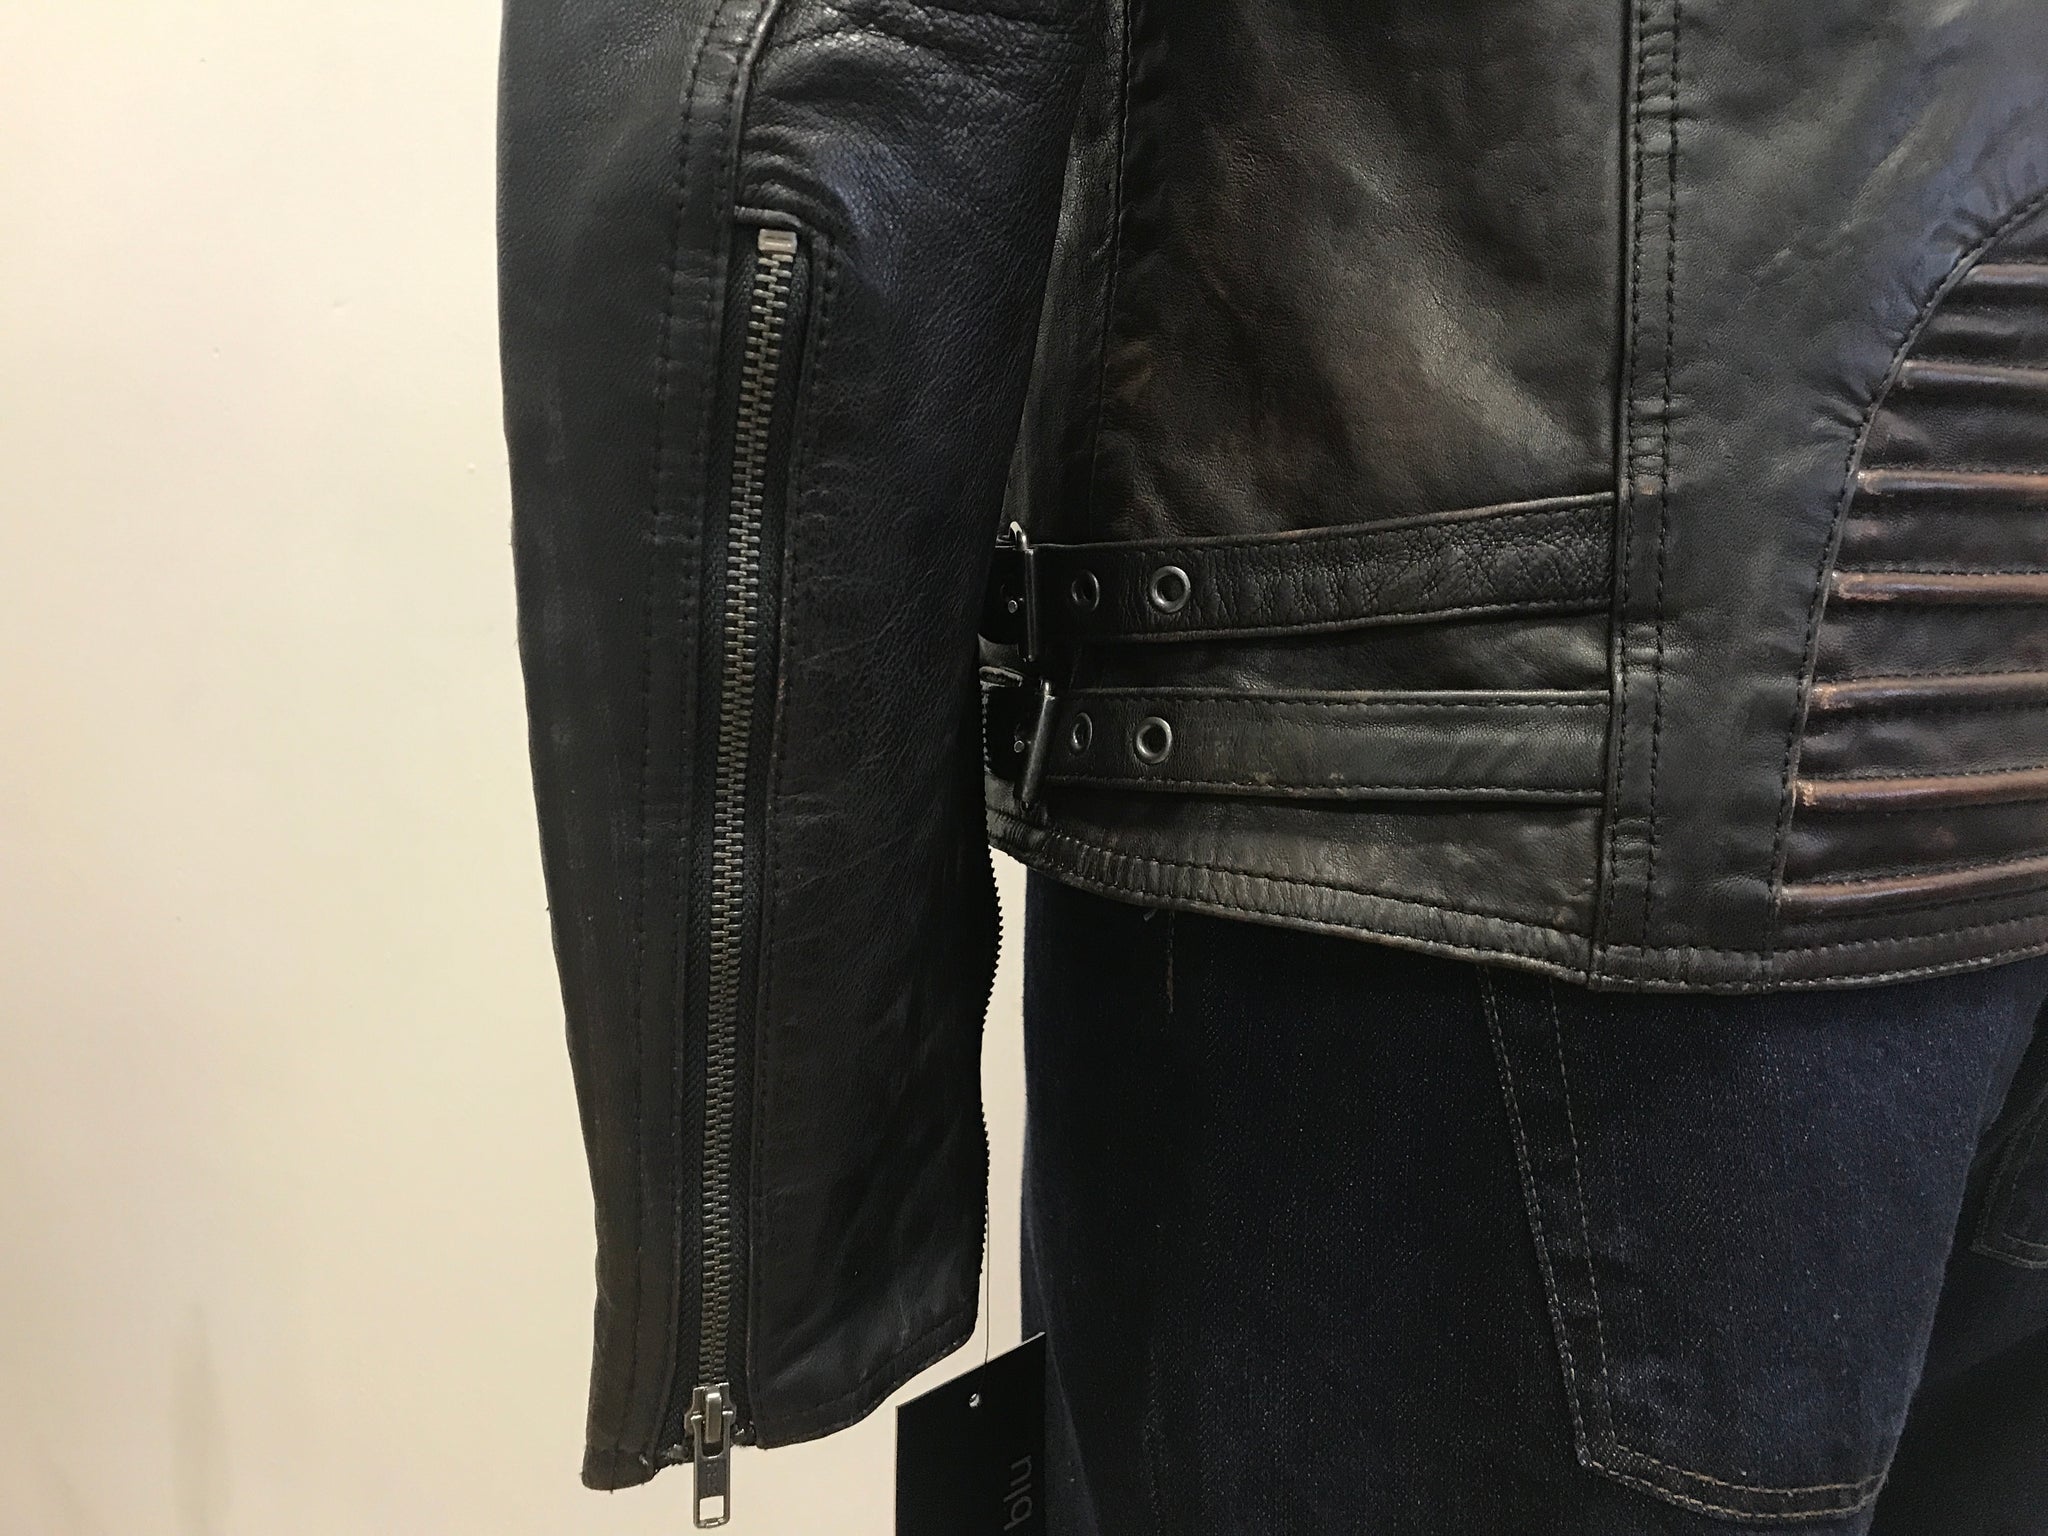 Brooklyn Leather Moto Jacket by Whet Blu